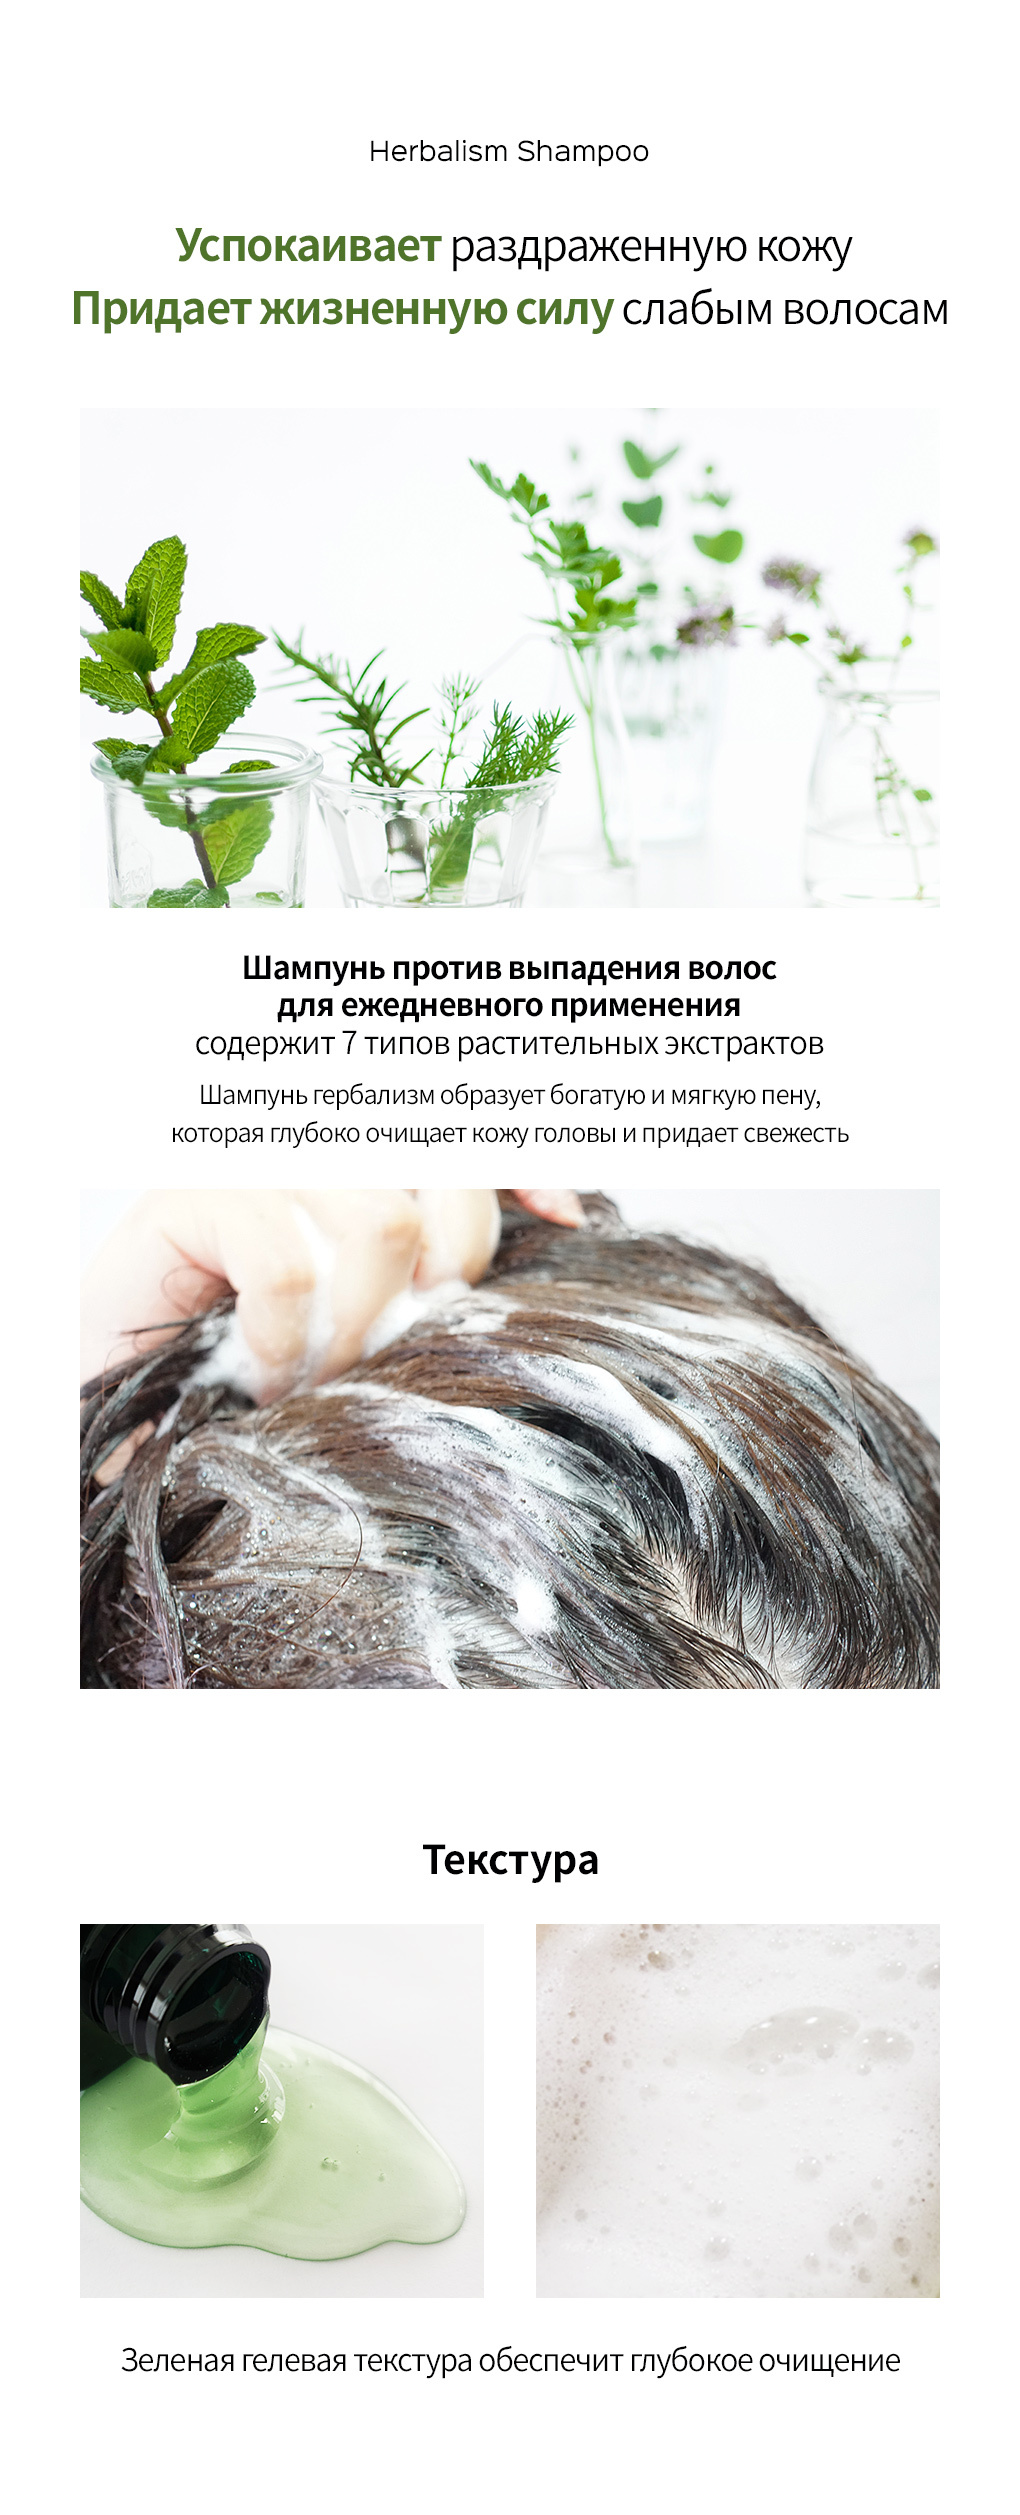 lador herbalism shampoo